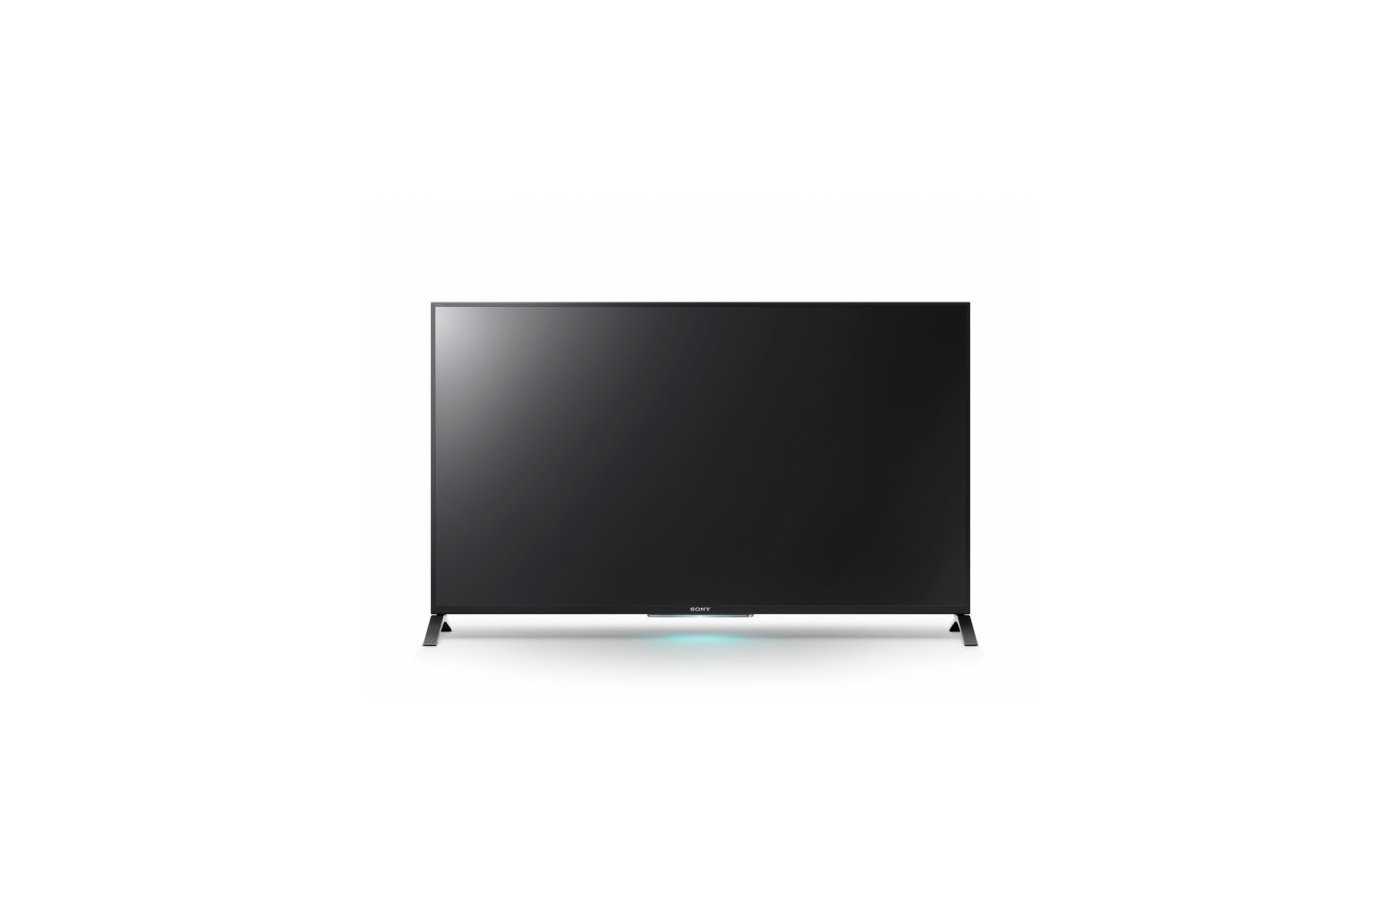 Sony kd-55x9005a - купить , скидки, цена, отзывы, обзор, характеристики - телевизоры